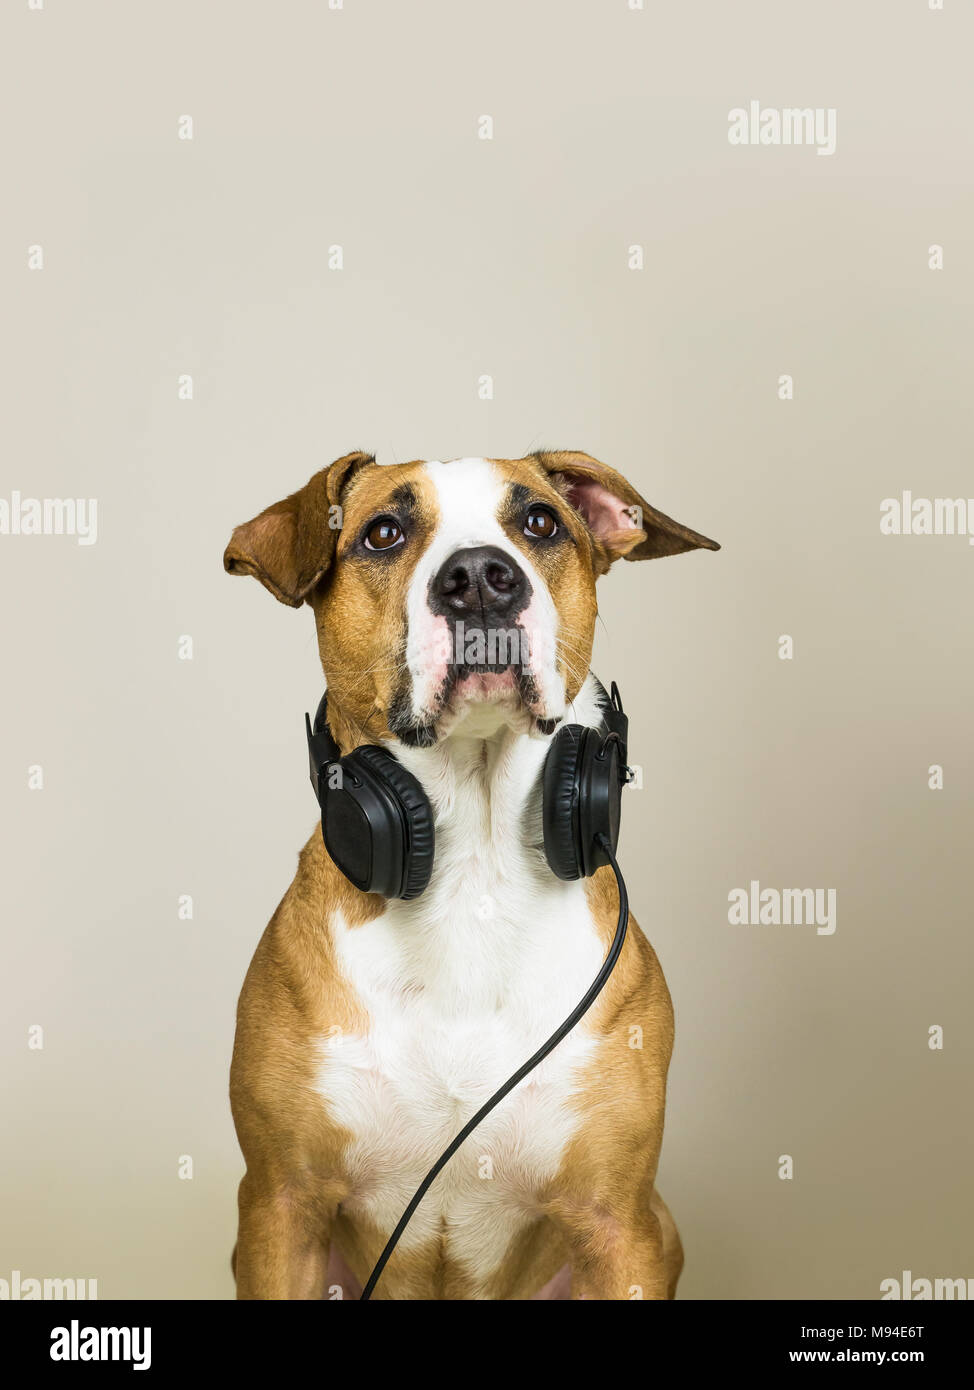 Auflösung headset -Bildmaterial in Hund Alamy -Fotos mit hoher – und